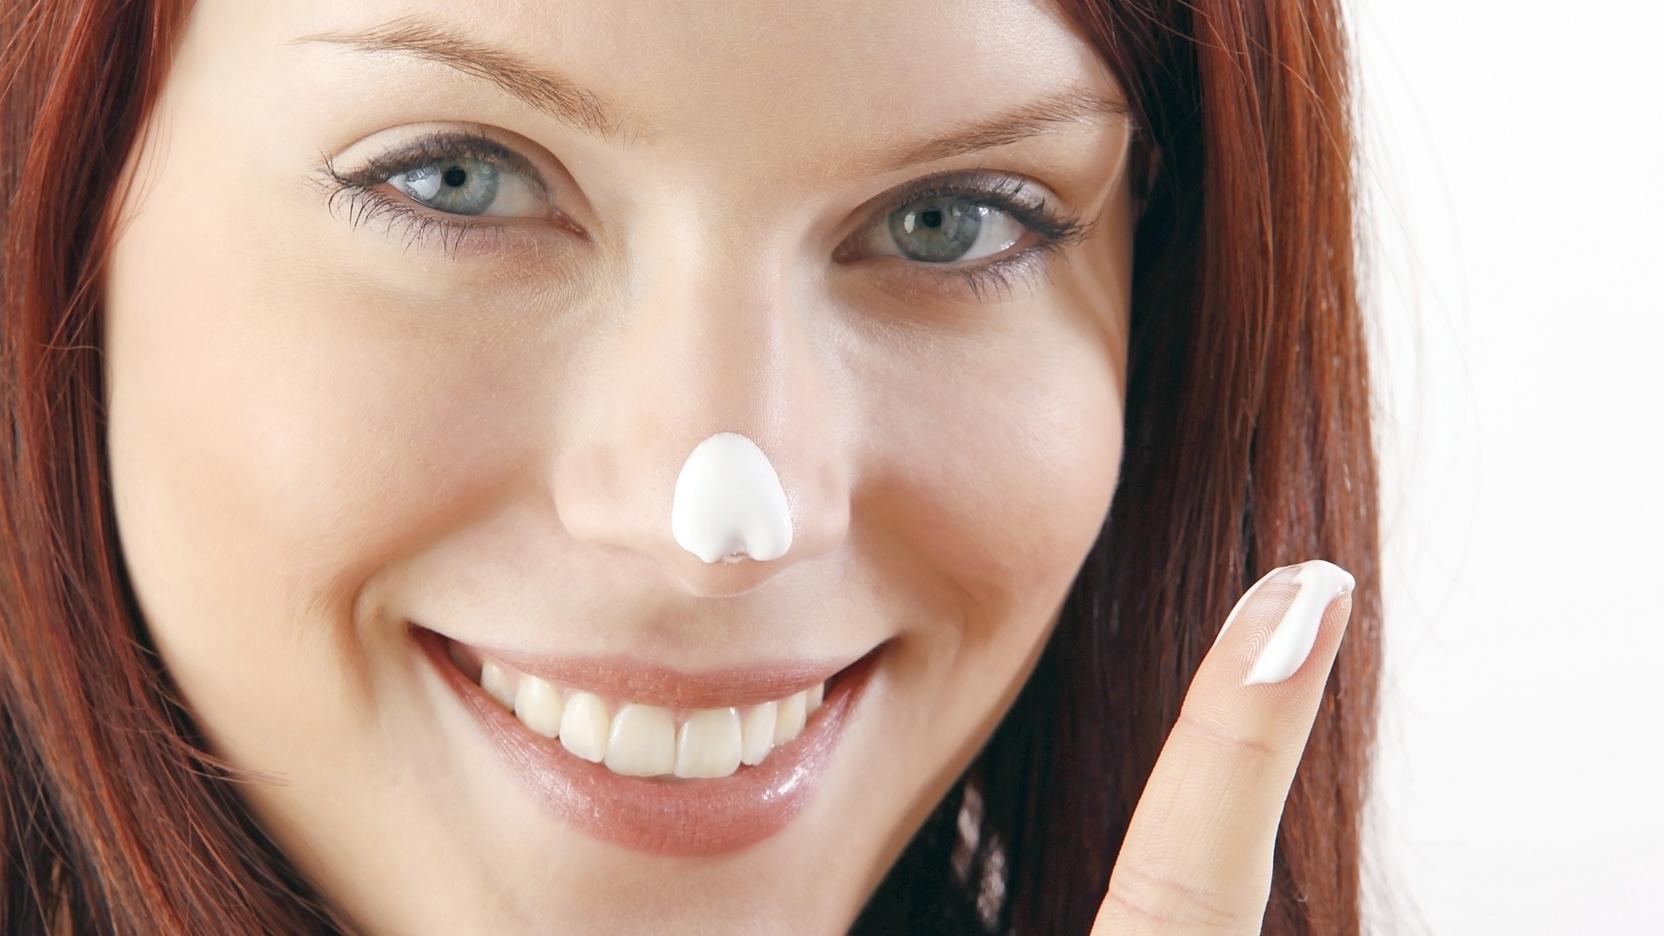 Sonnenschutz: So schützen Sie Ihr Gesicht im Sommer Kosmetik-Expertin Jessica Bechtle klärt auf